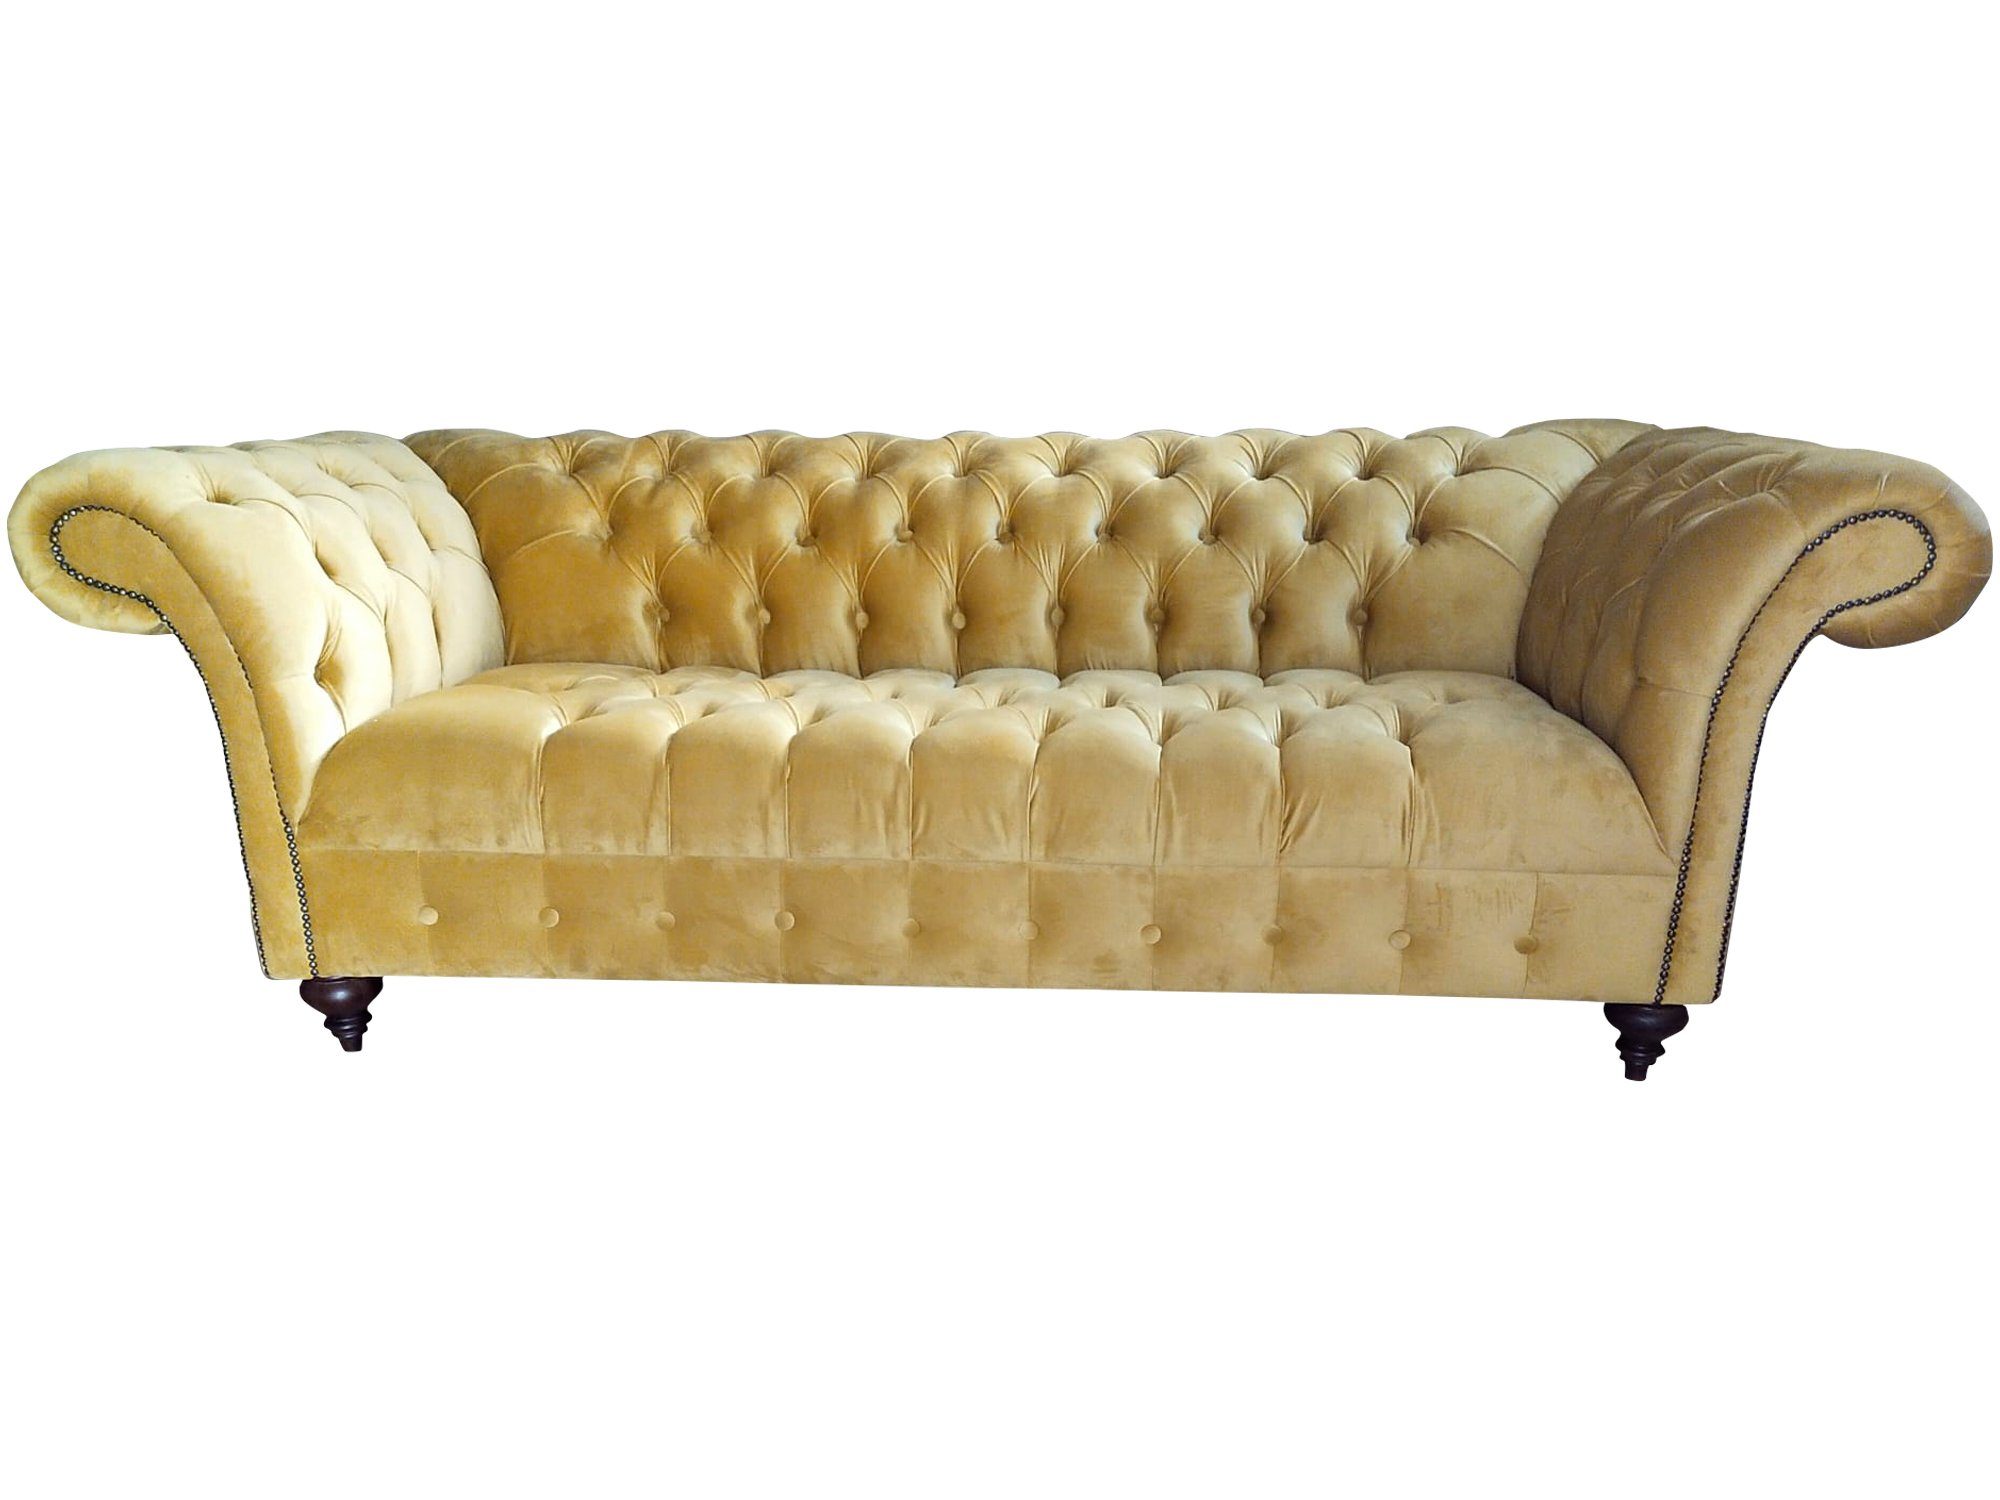 JVmoebel Sofa, Luxus Sofa Dreisitzer Design Chesterfield Textil Couchen Modern Neu